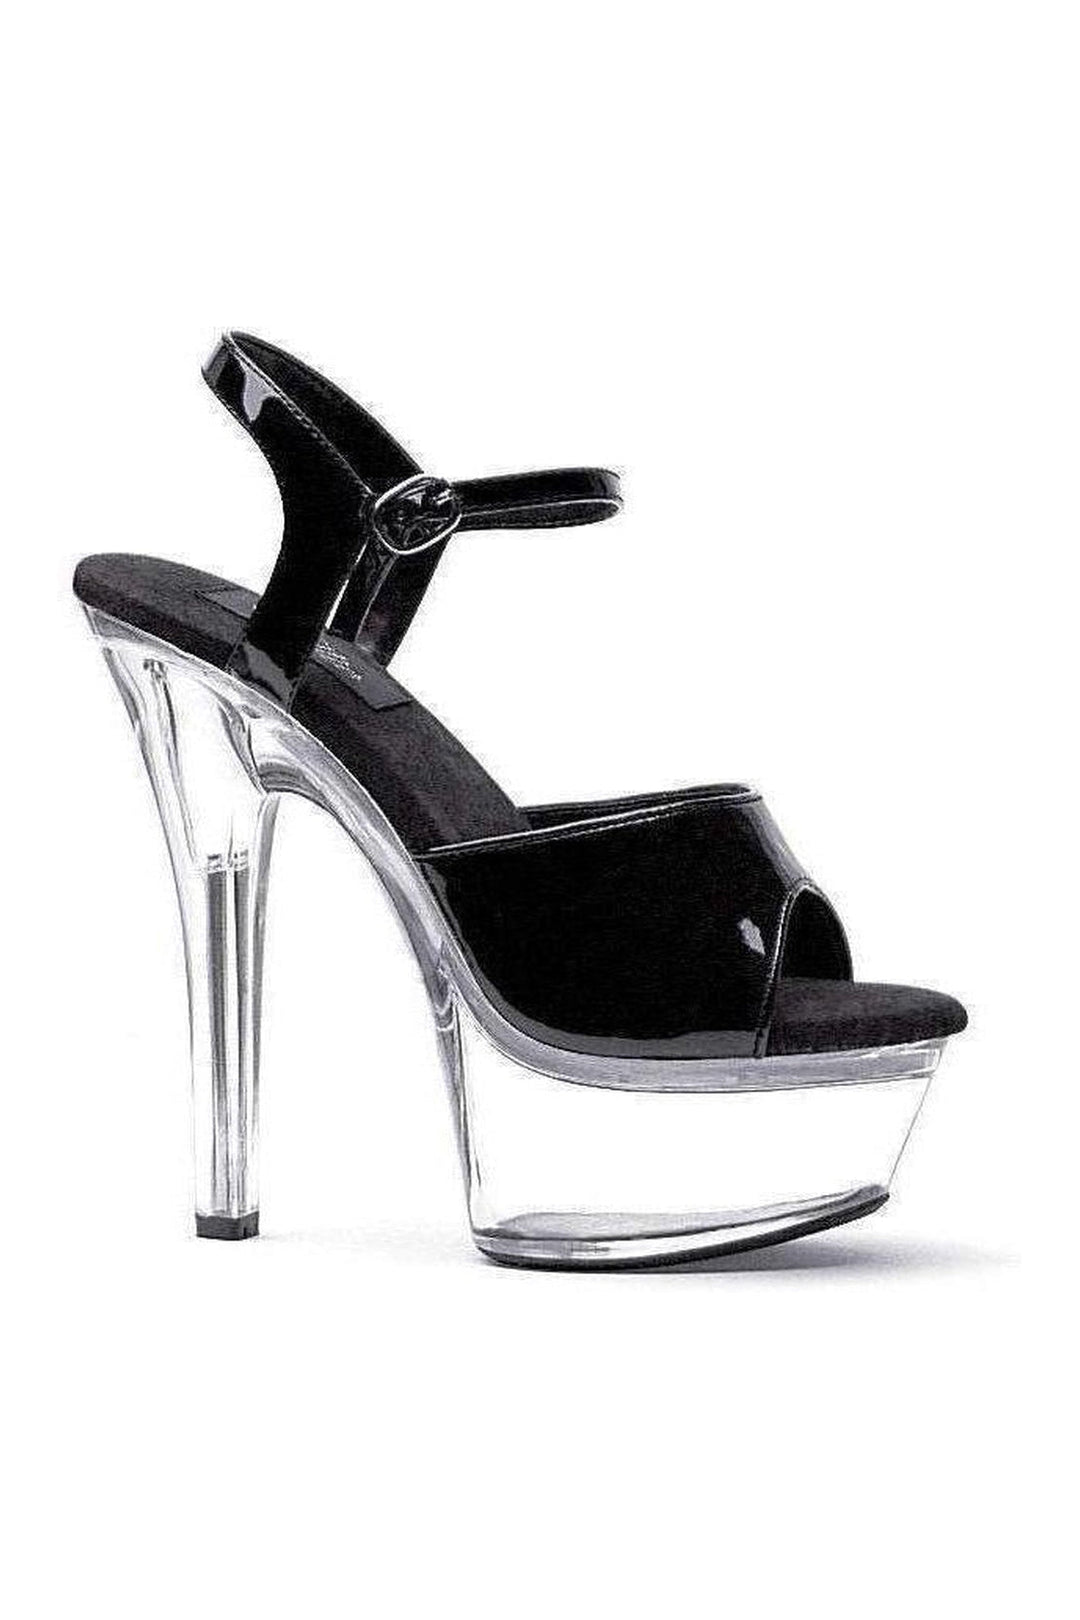 601-JULIET-C Platform Sandal | Black Patent-Ellie Shoes-Black-Sandals-SEXYSHOES.COM